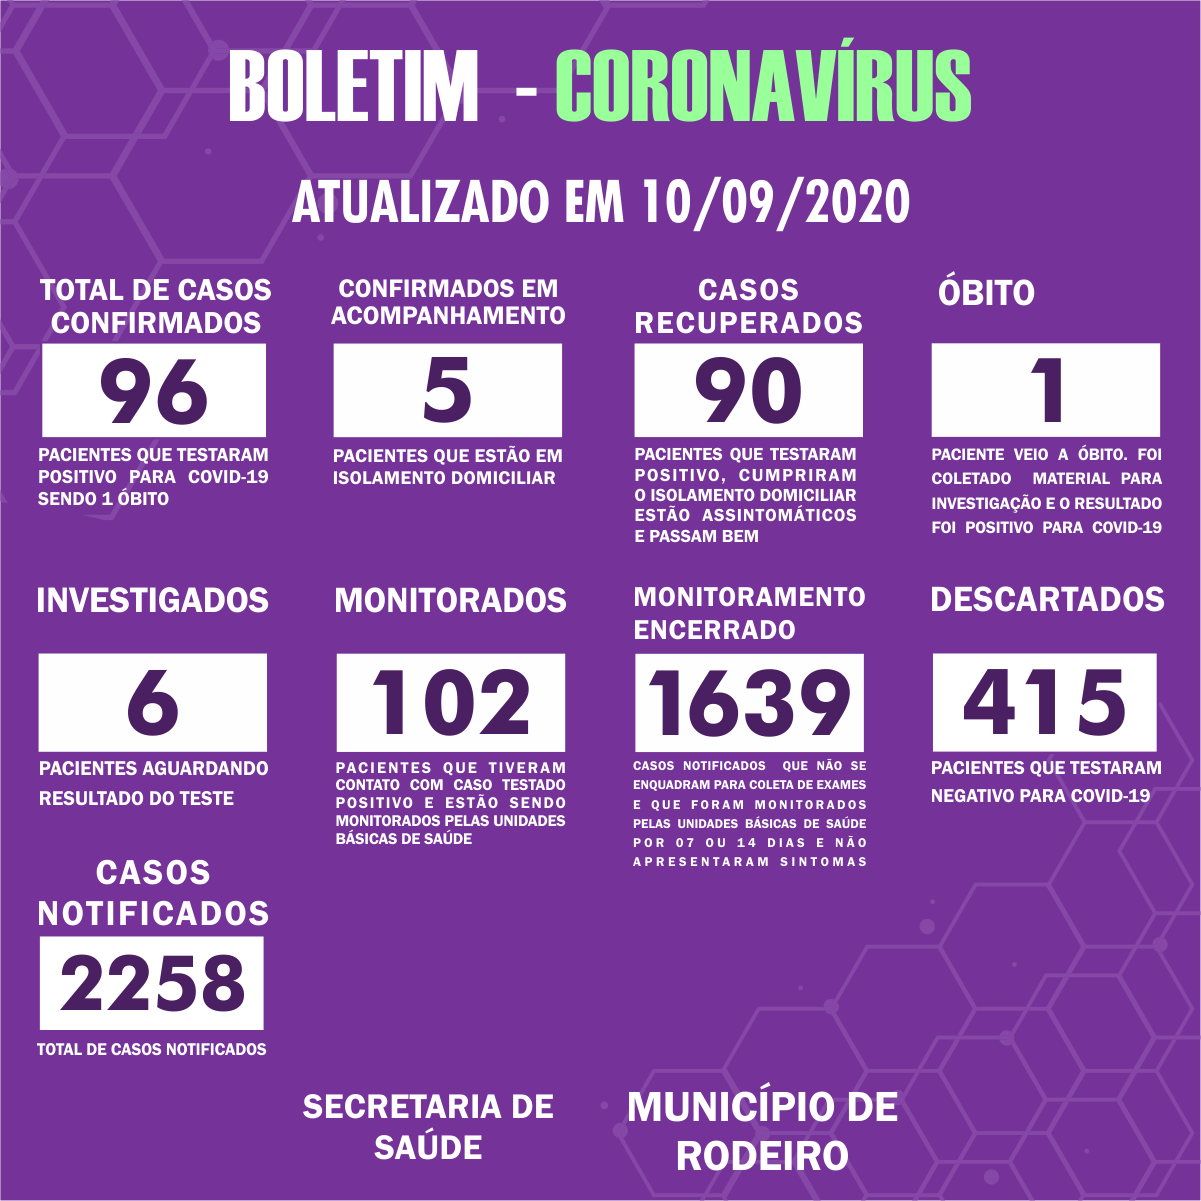 Boletim Epidemiológico do Município de Rodeiro sobre coronavírus, atualizado em 10/09/2020